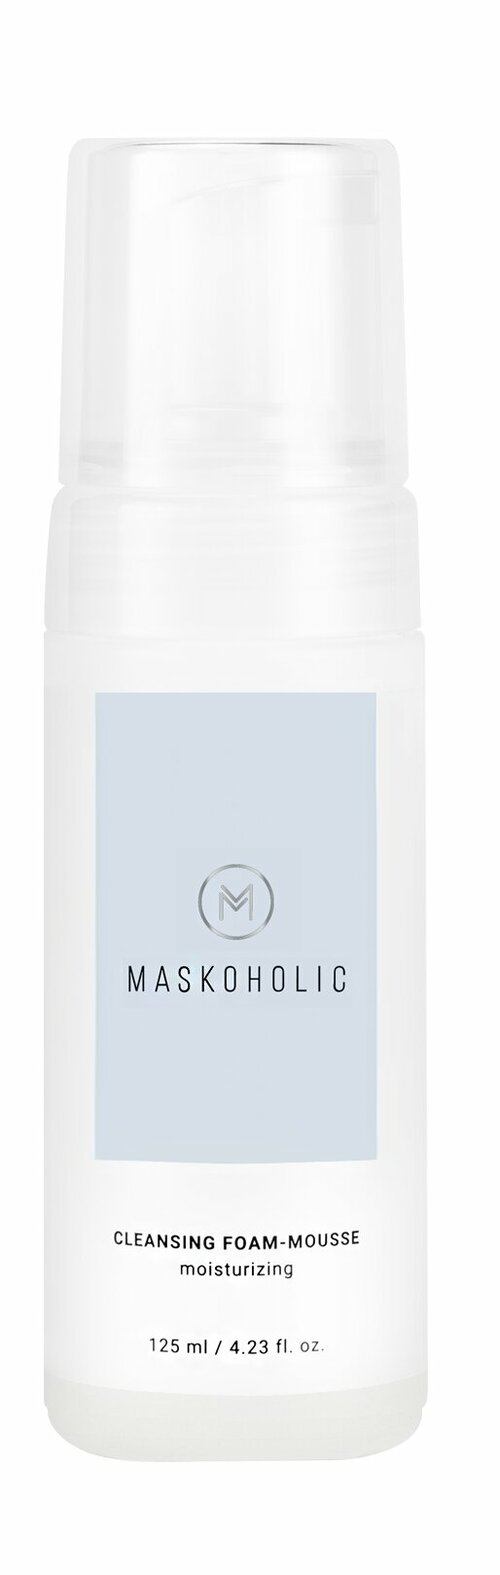 MASKOHOLIC Пенка-мусс для умывания для всех типов кожи увлажняющая, 125 мл